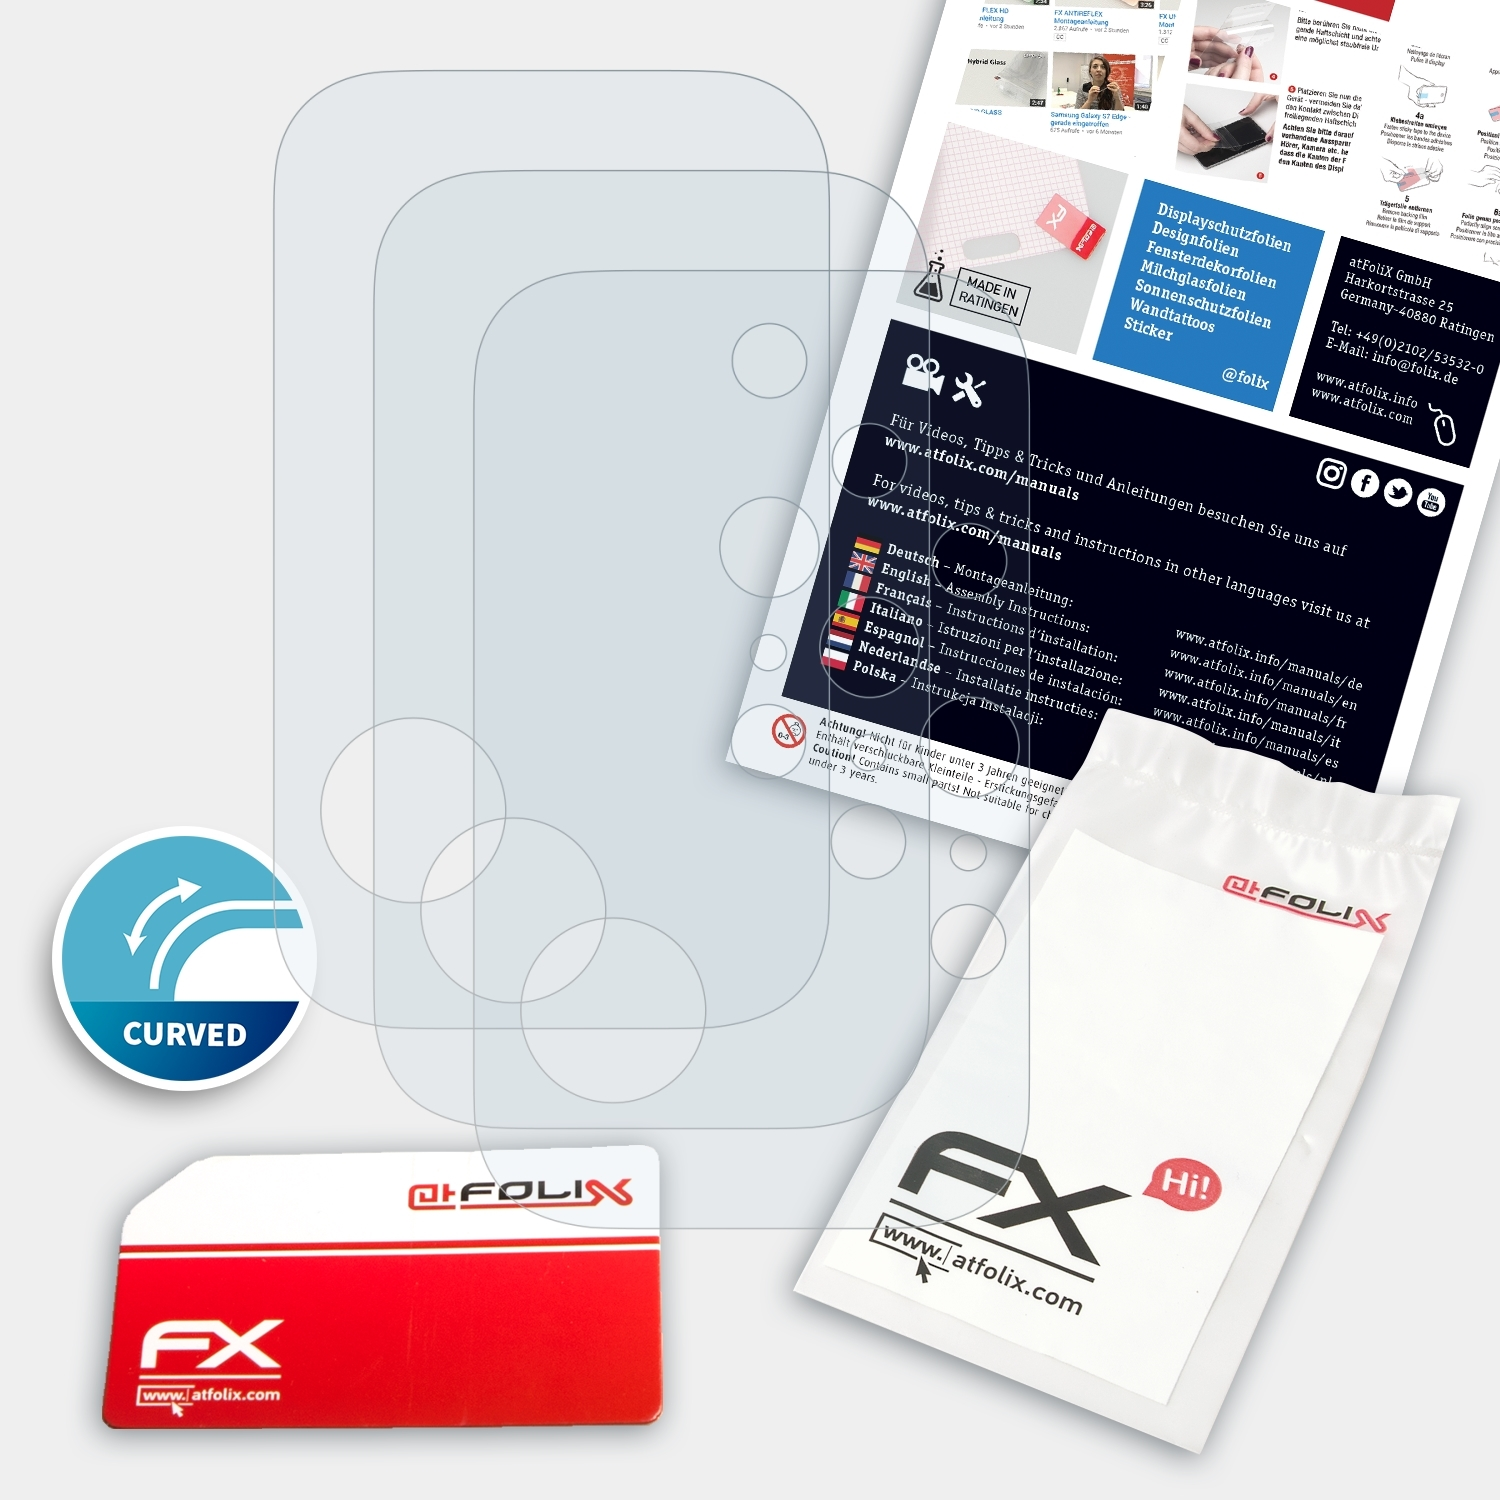 ATFOLIX 3x FX-ActiFleX Displayschutz(für Lenovo 2 Phone Duel Lens) Legion